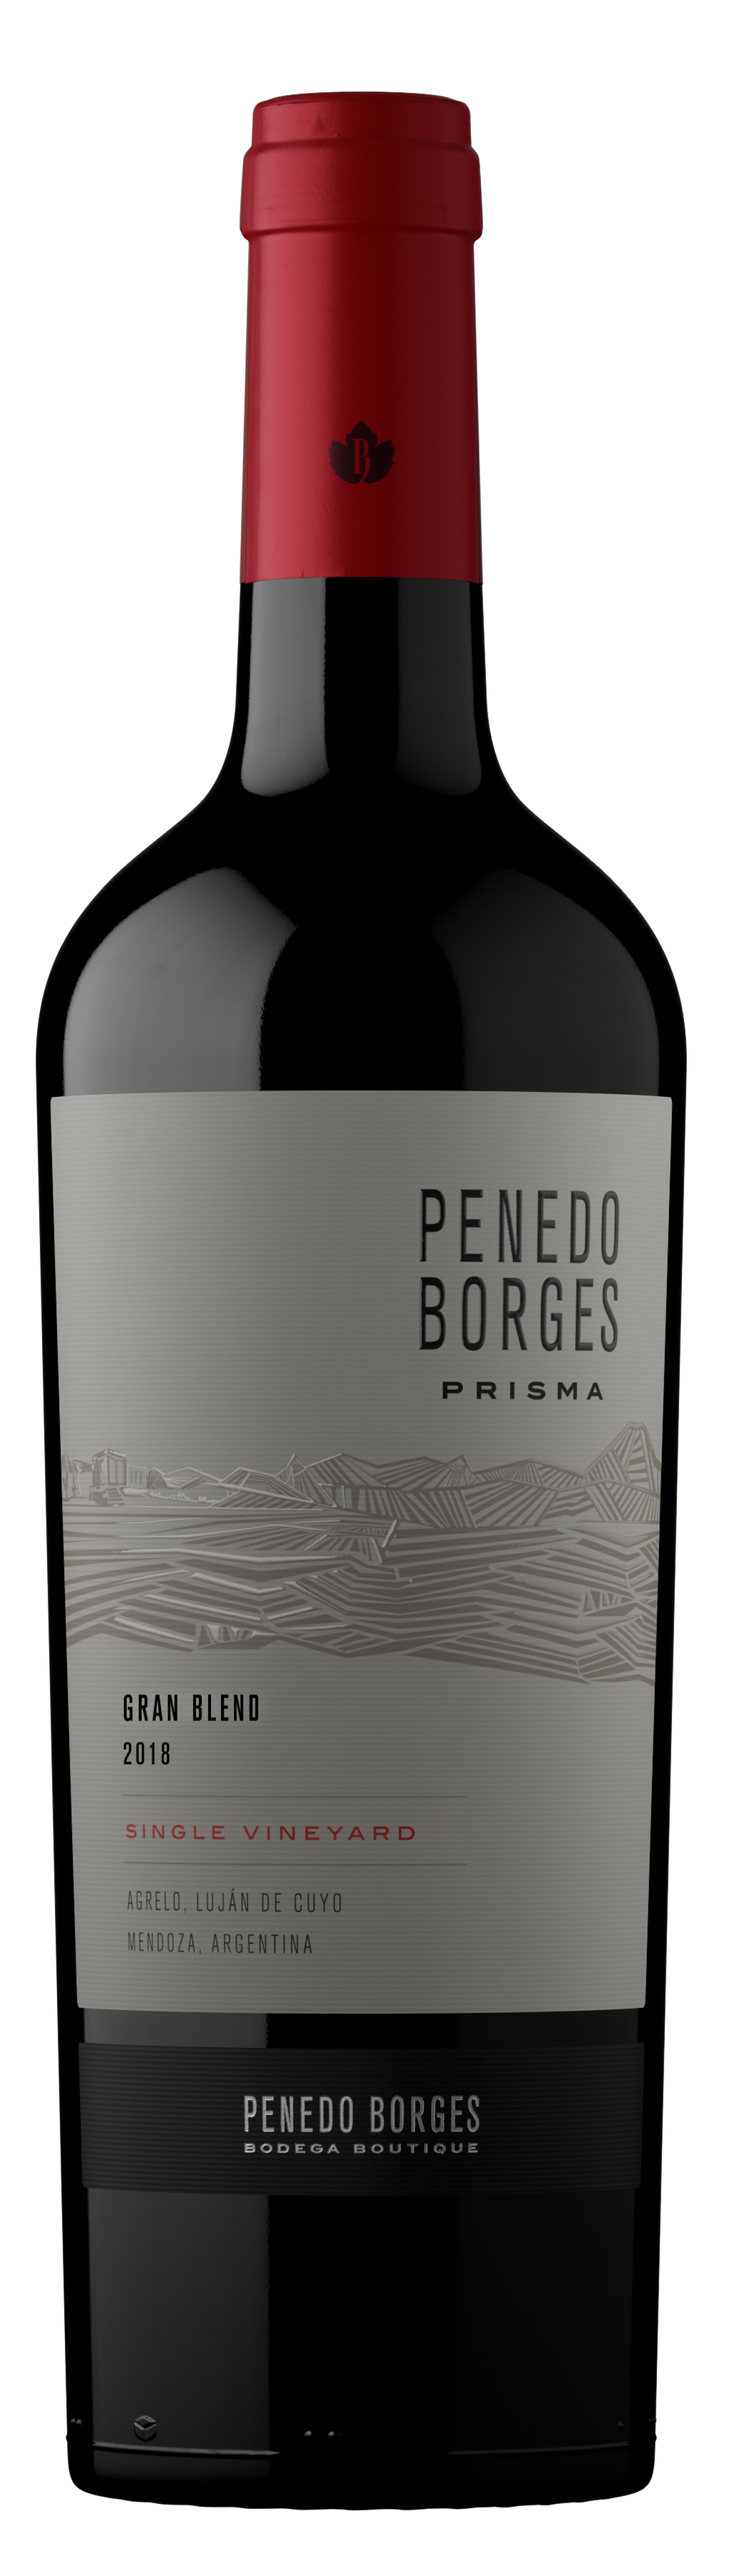 Prisma Grand Blend Penedo Borges.